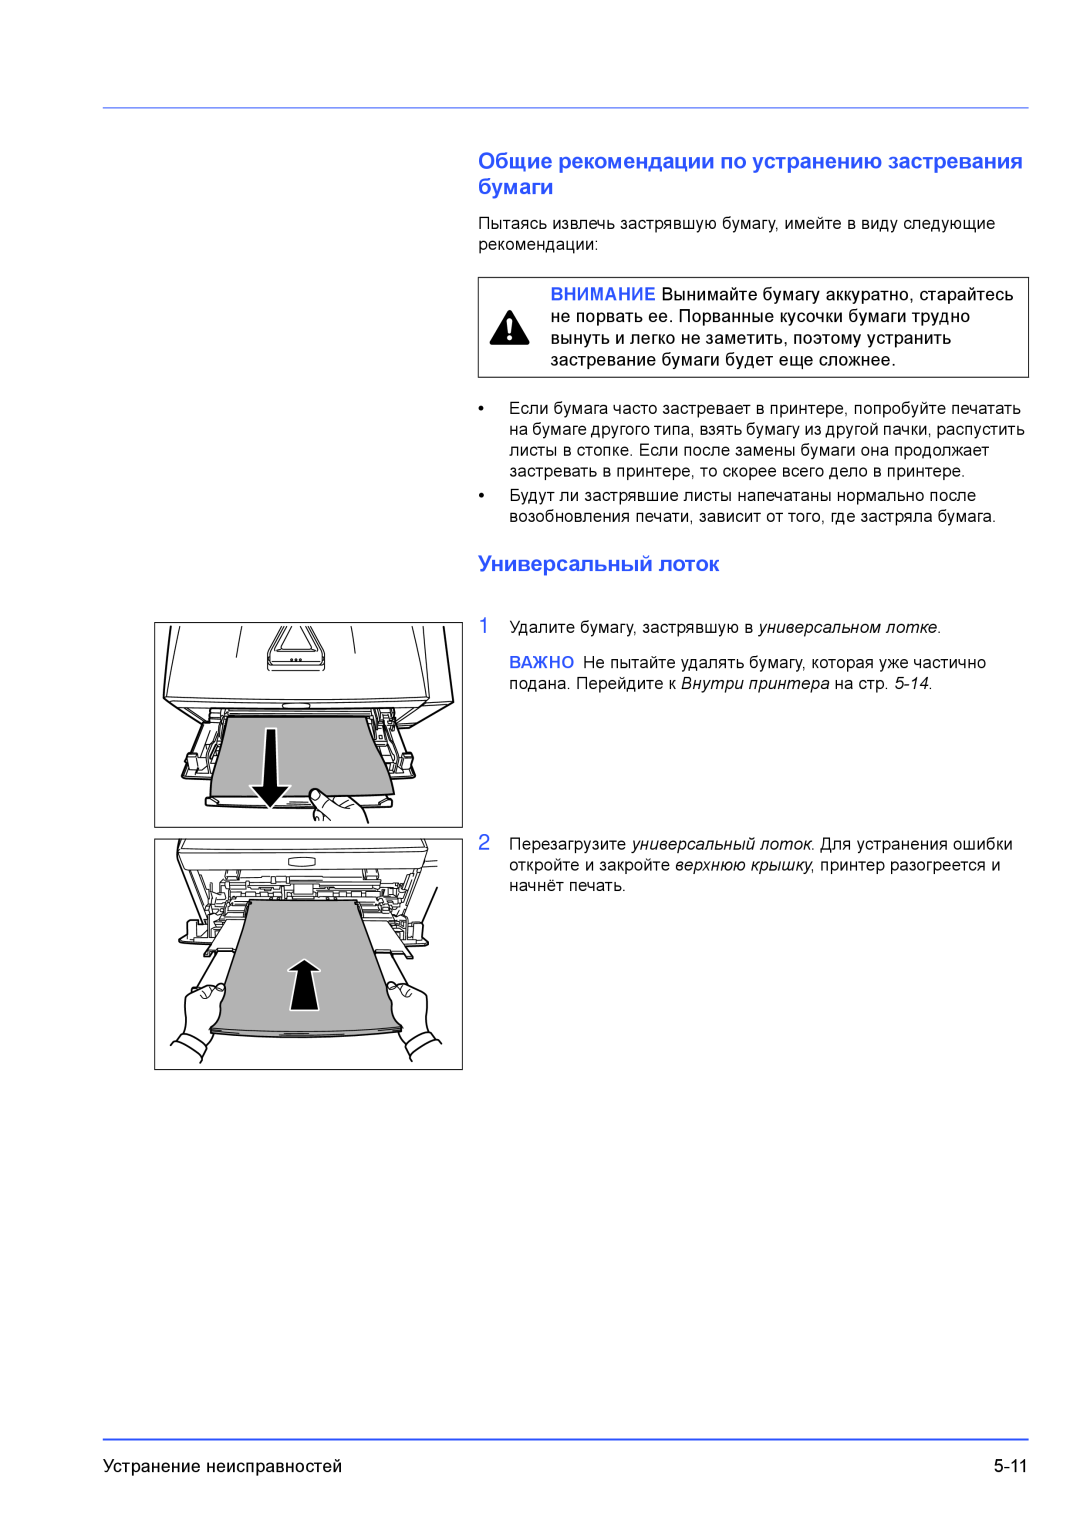 Kyocera FS-1100, FS-1300D manual бумаги, Универсальный лоток, Общие рекомендации по устранению застревания 